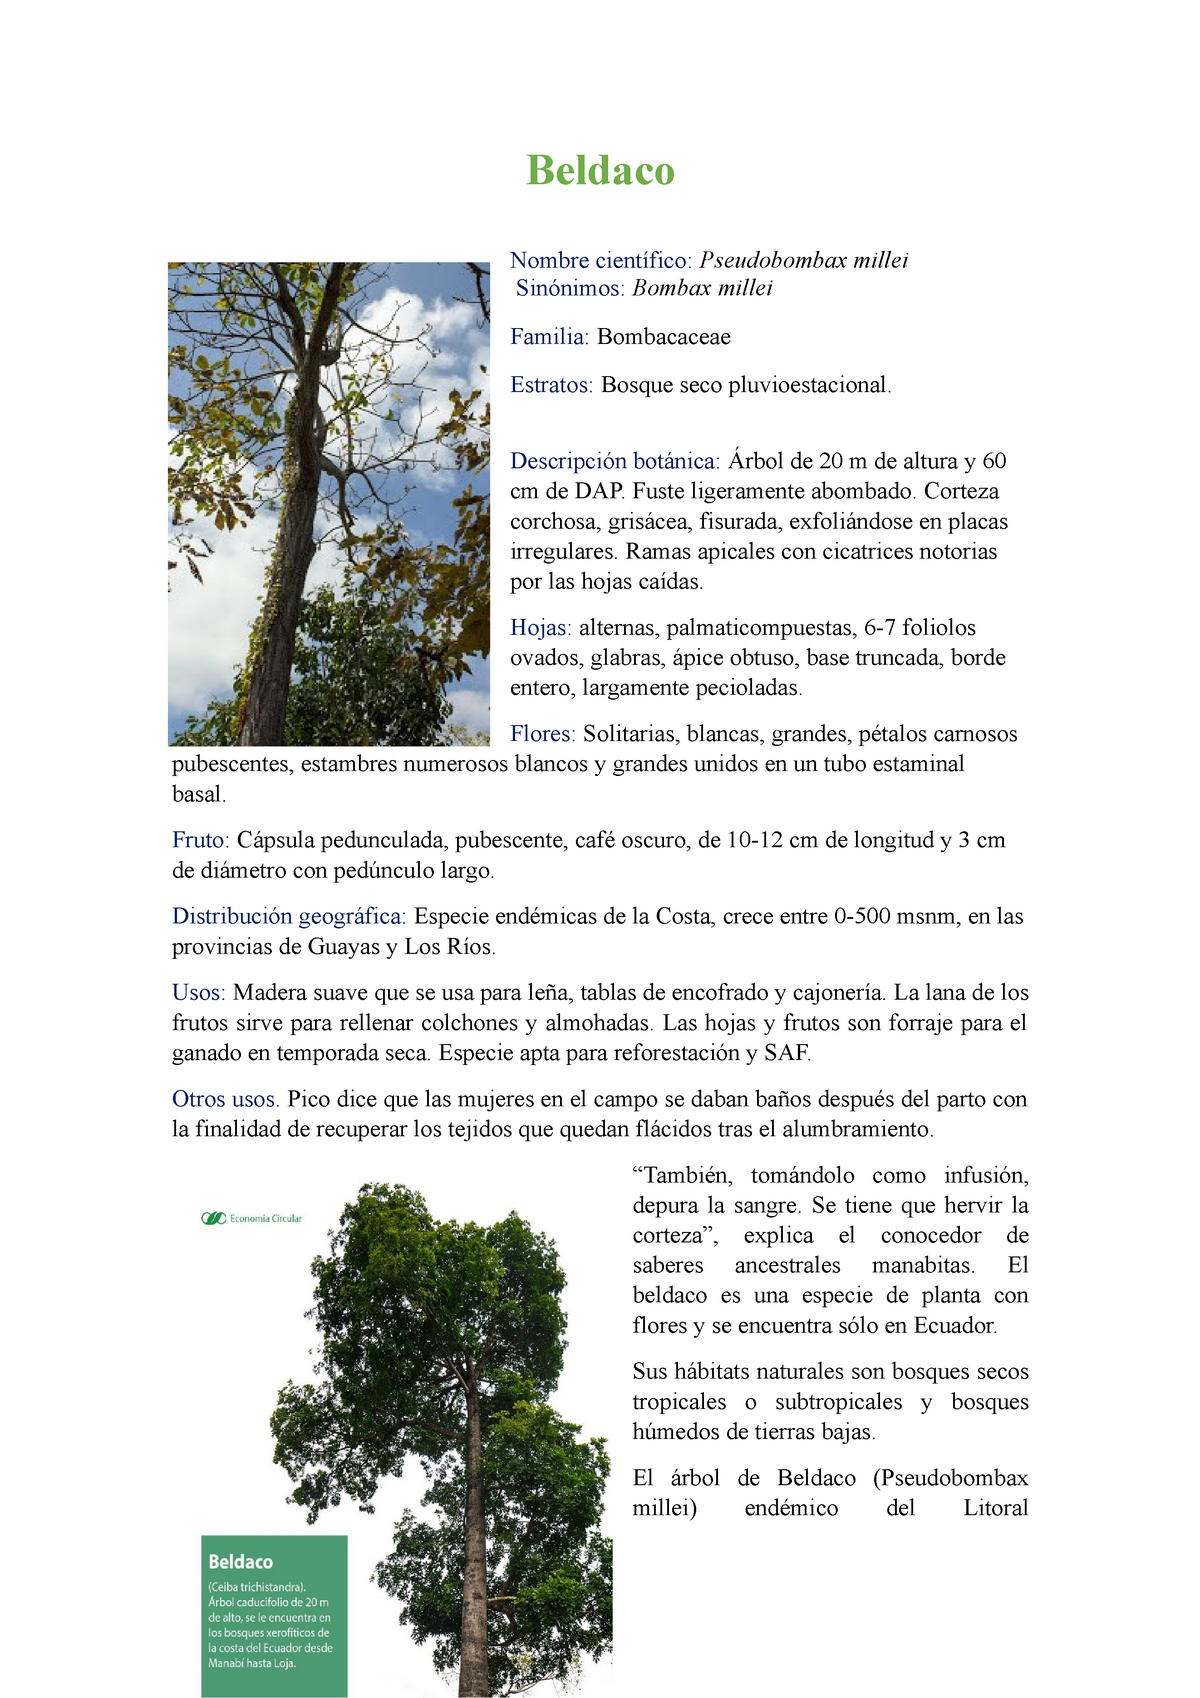 Beldaco - Descripción botánica: Árbol de 20 m de altura y 60 cm de DAP.  Fuste ligeramente - Beldaco - Studocu